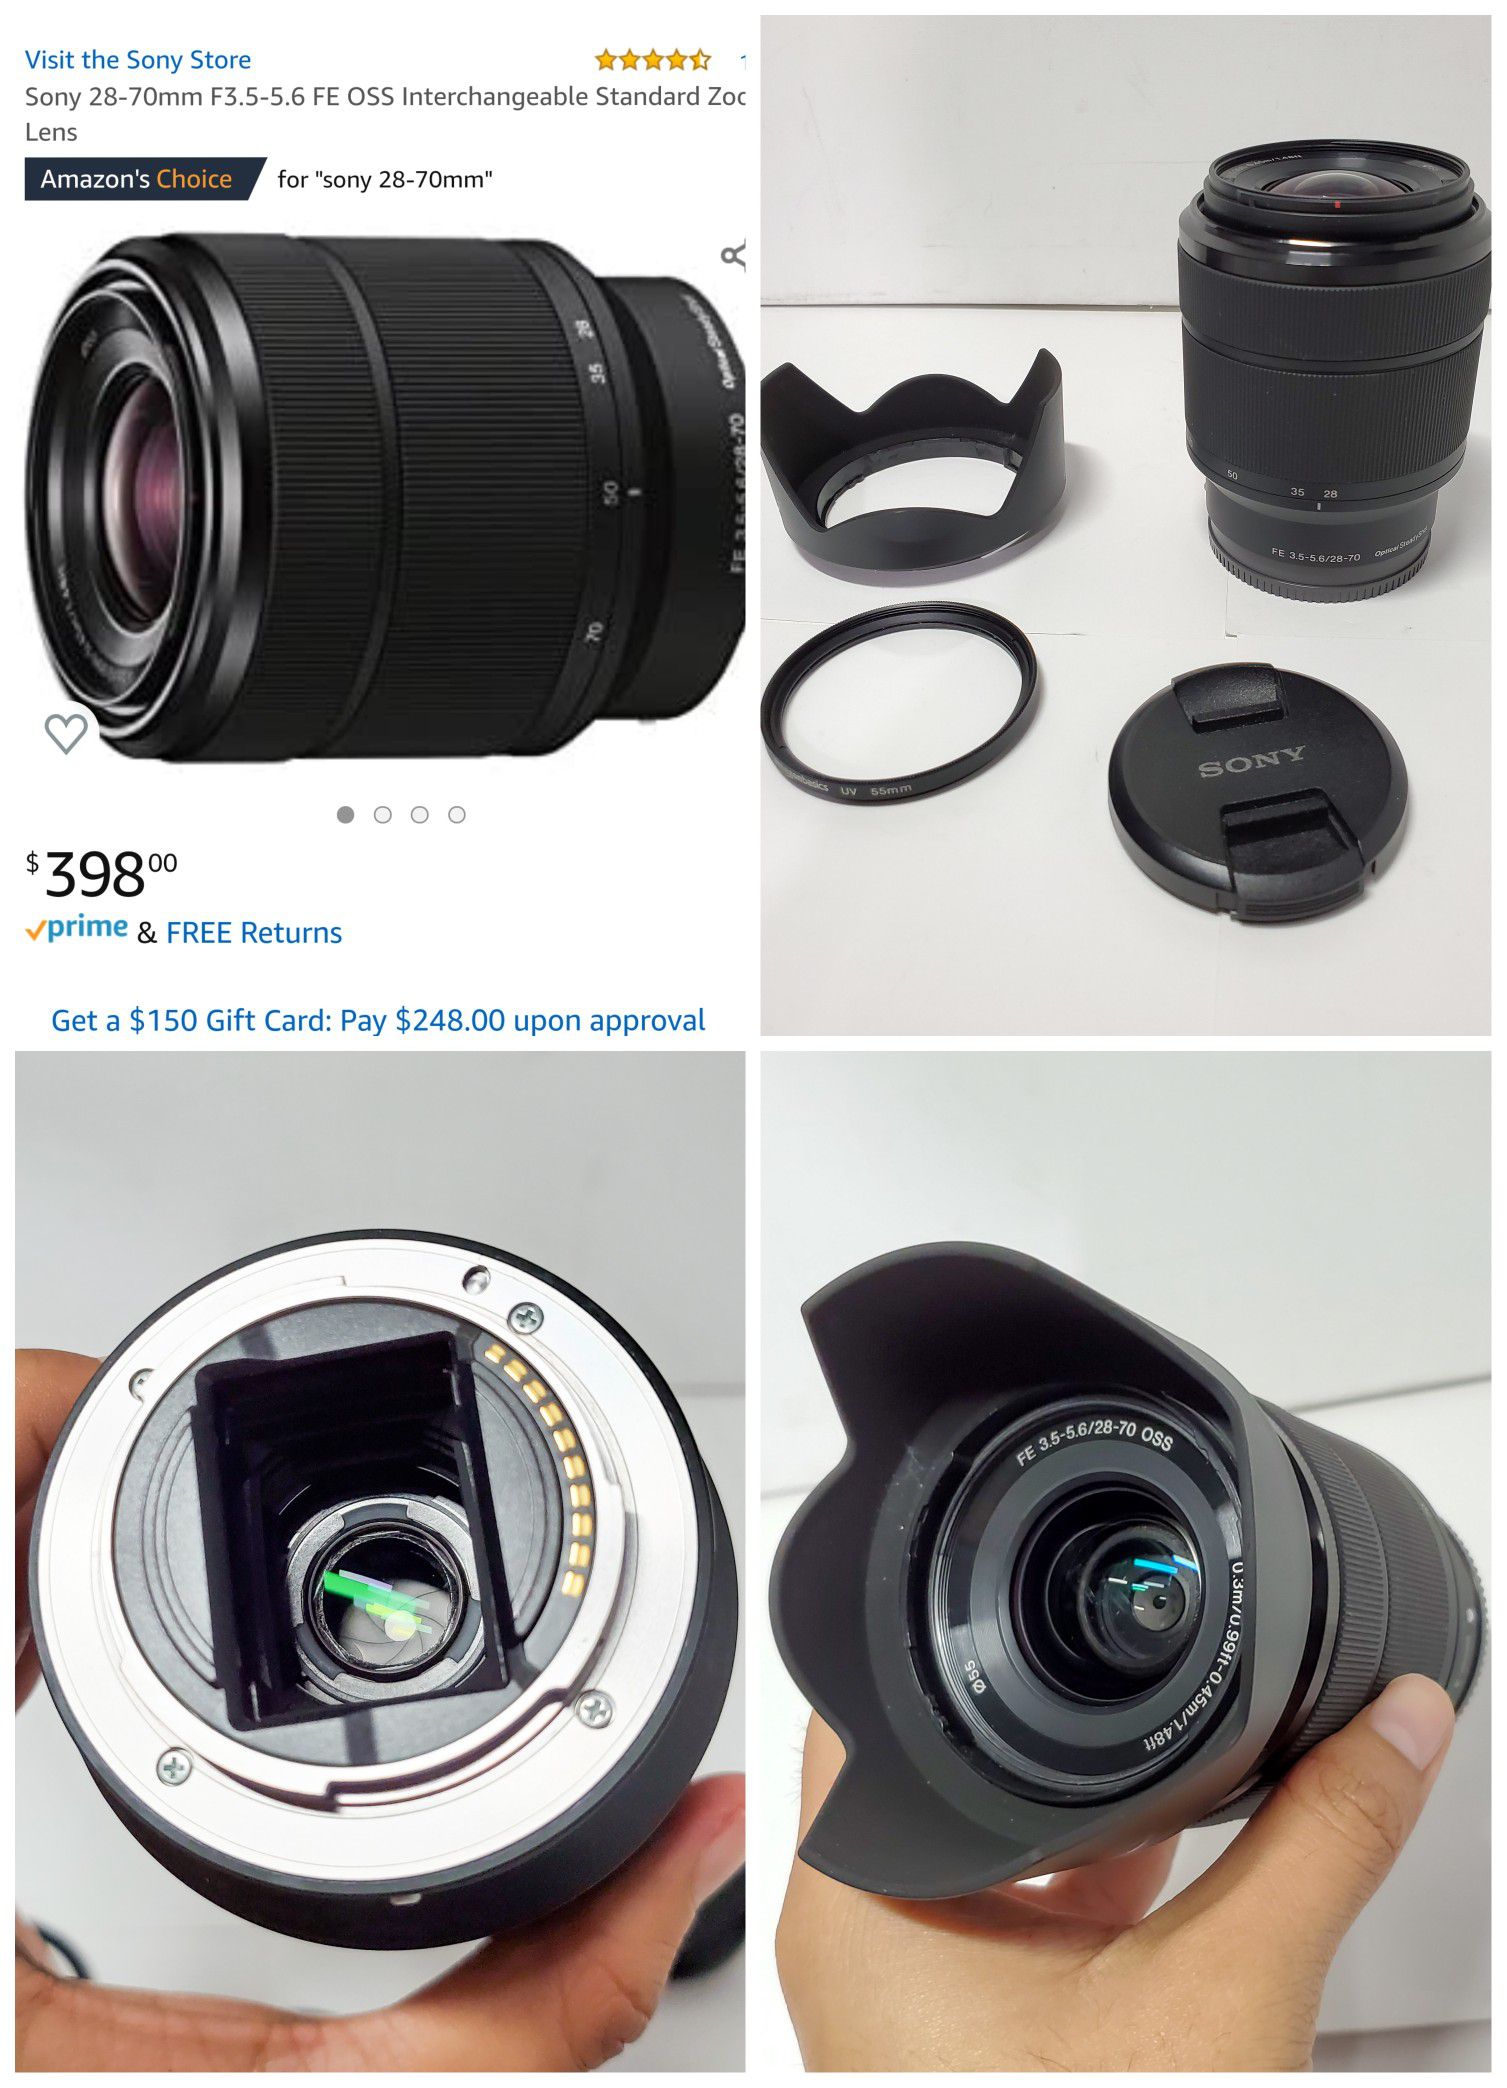 Sony full frame 28-70mm F3.5-5.6 FE OSS Interchangeable Standard Zoom Lens